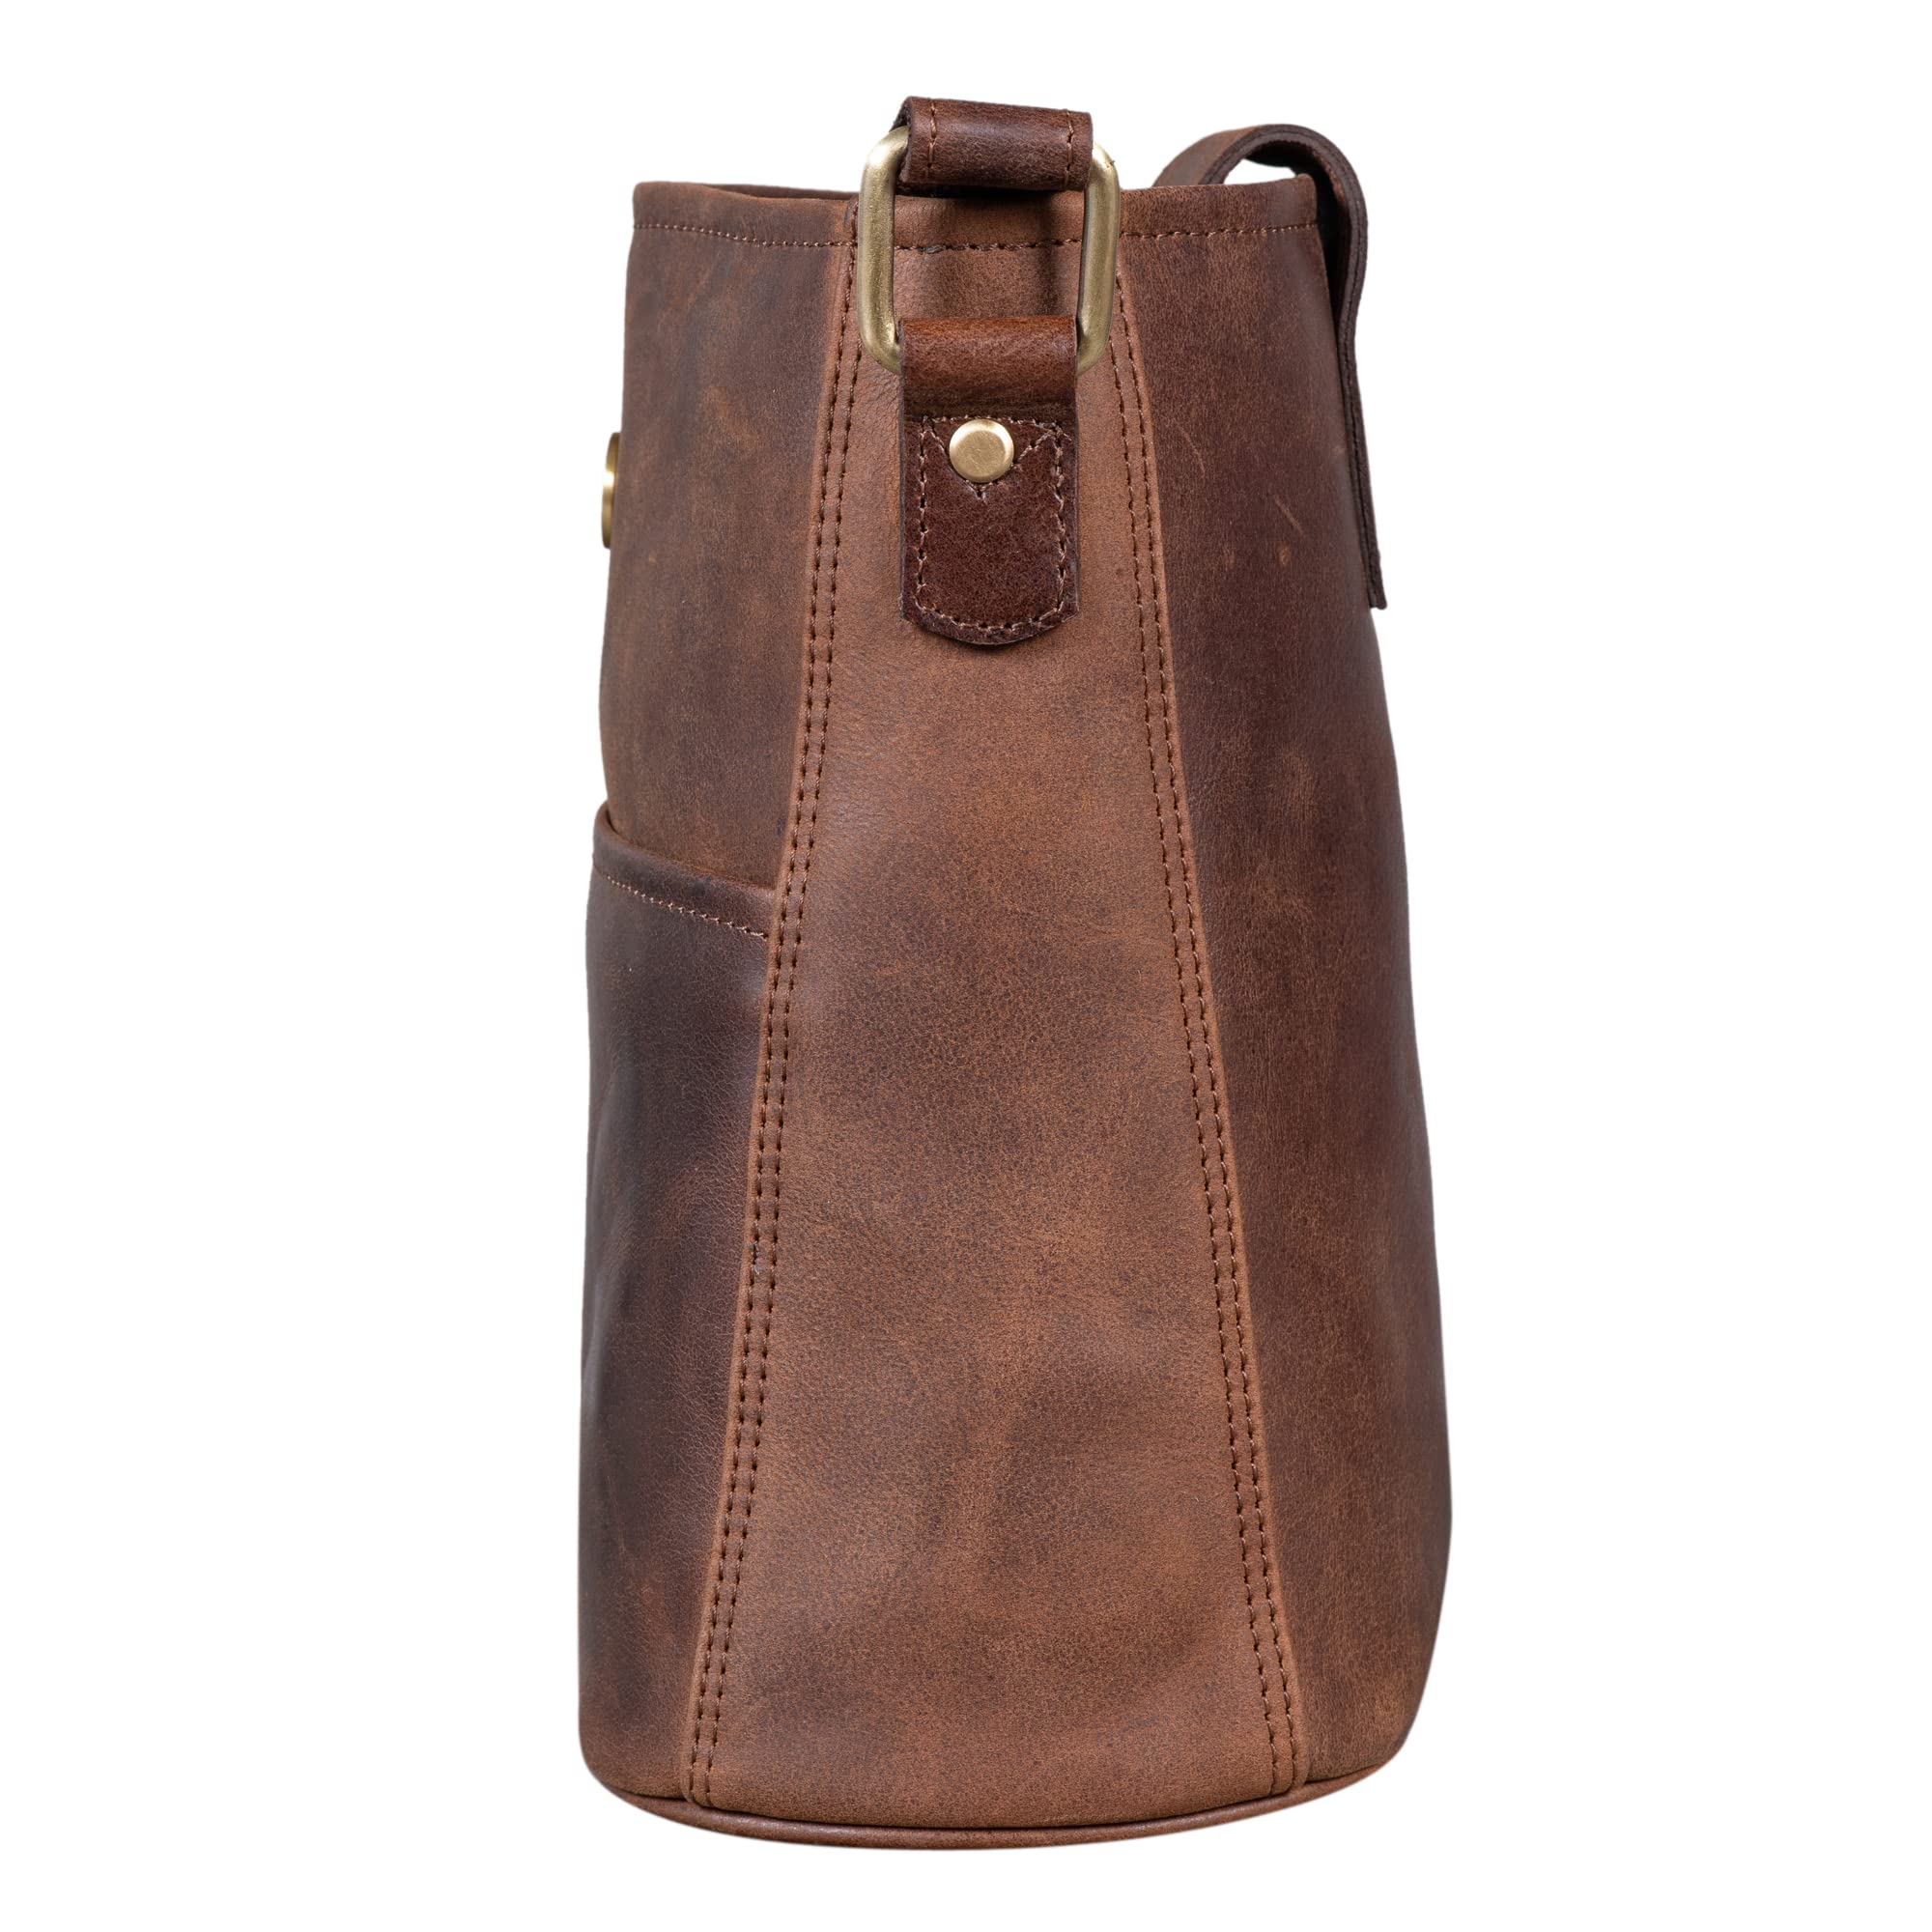 LEABAGS Athens Shoulder Bag I Genuine Leather I Ladies Handbag I Vintage Look I Shoulder Bag I Shopper I Multi Bag